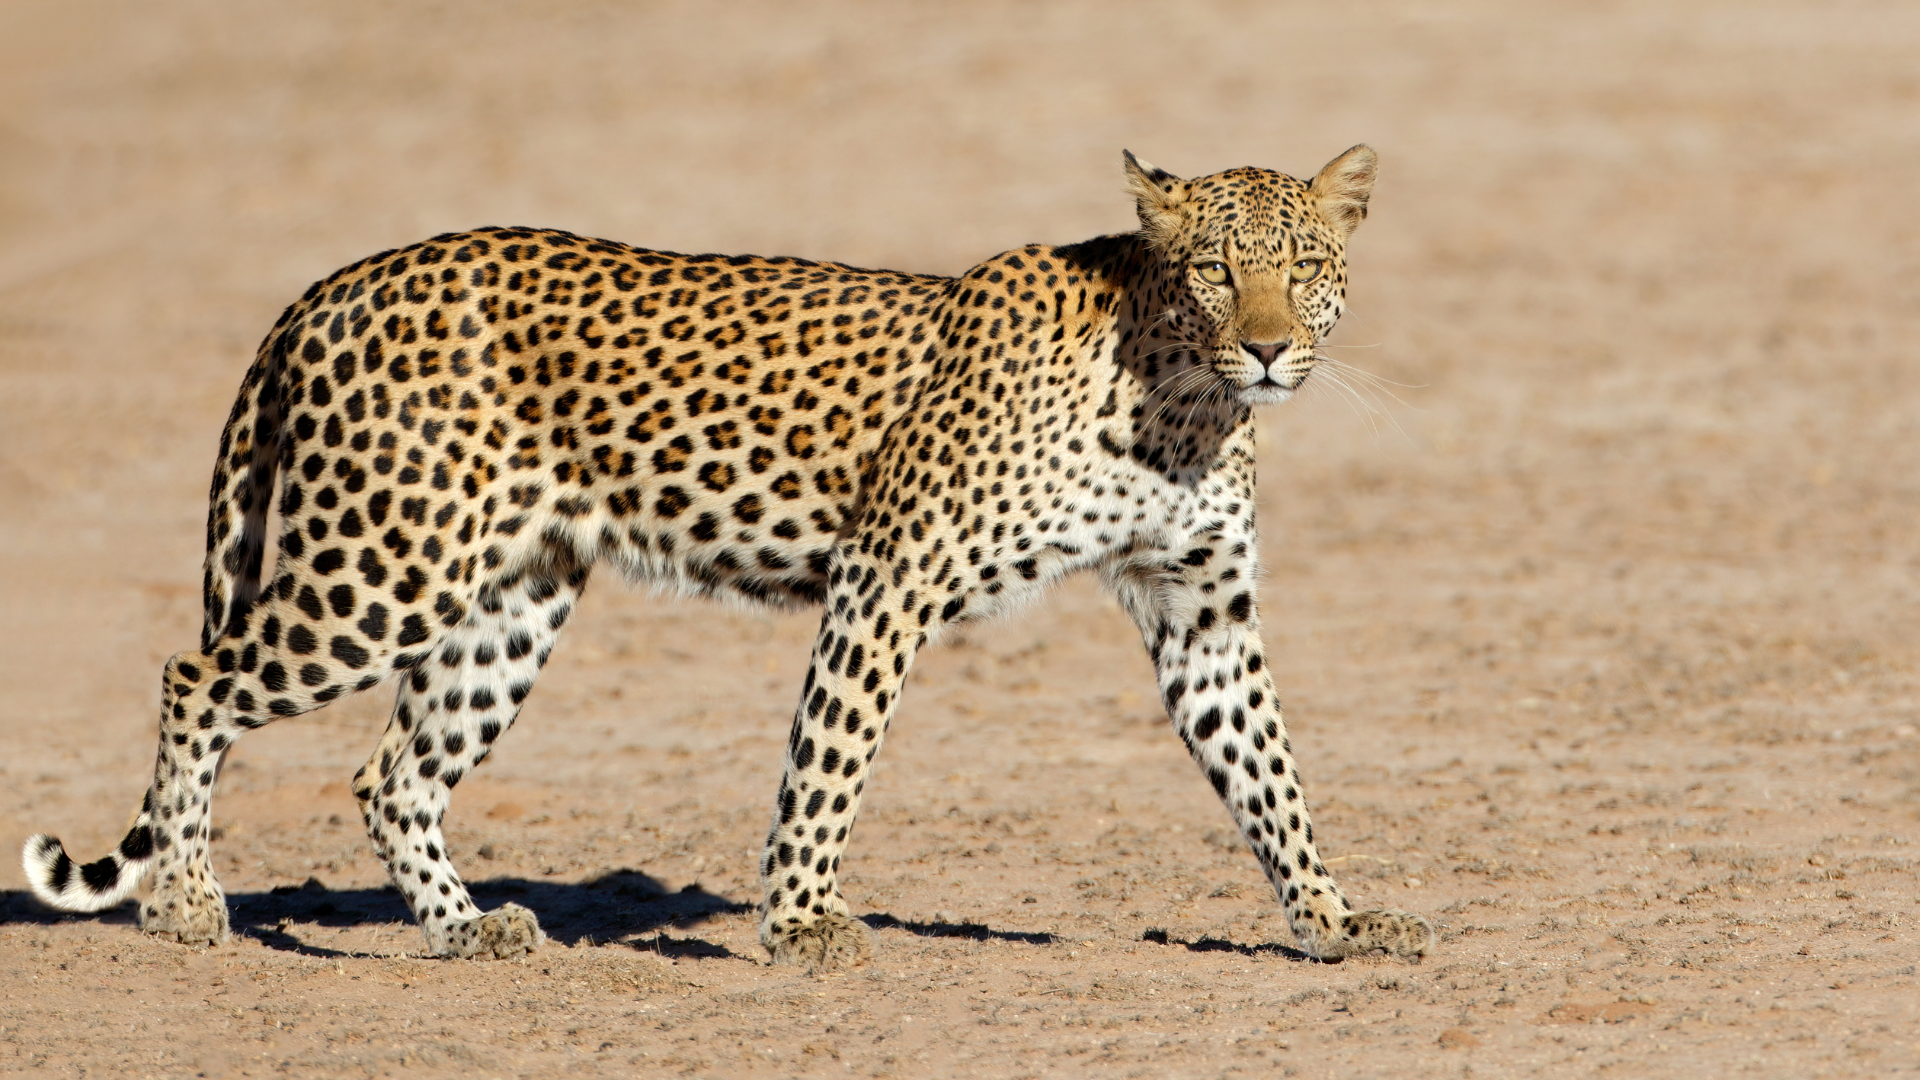 A Leopard in the Namib Desert